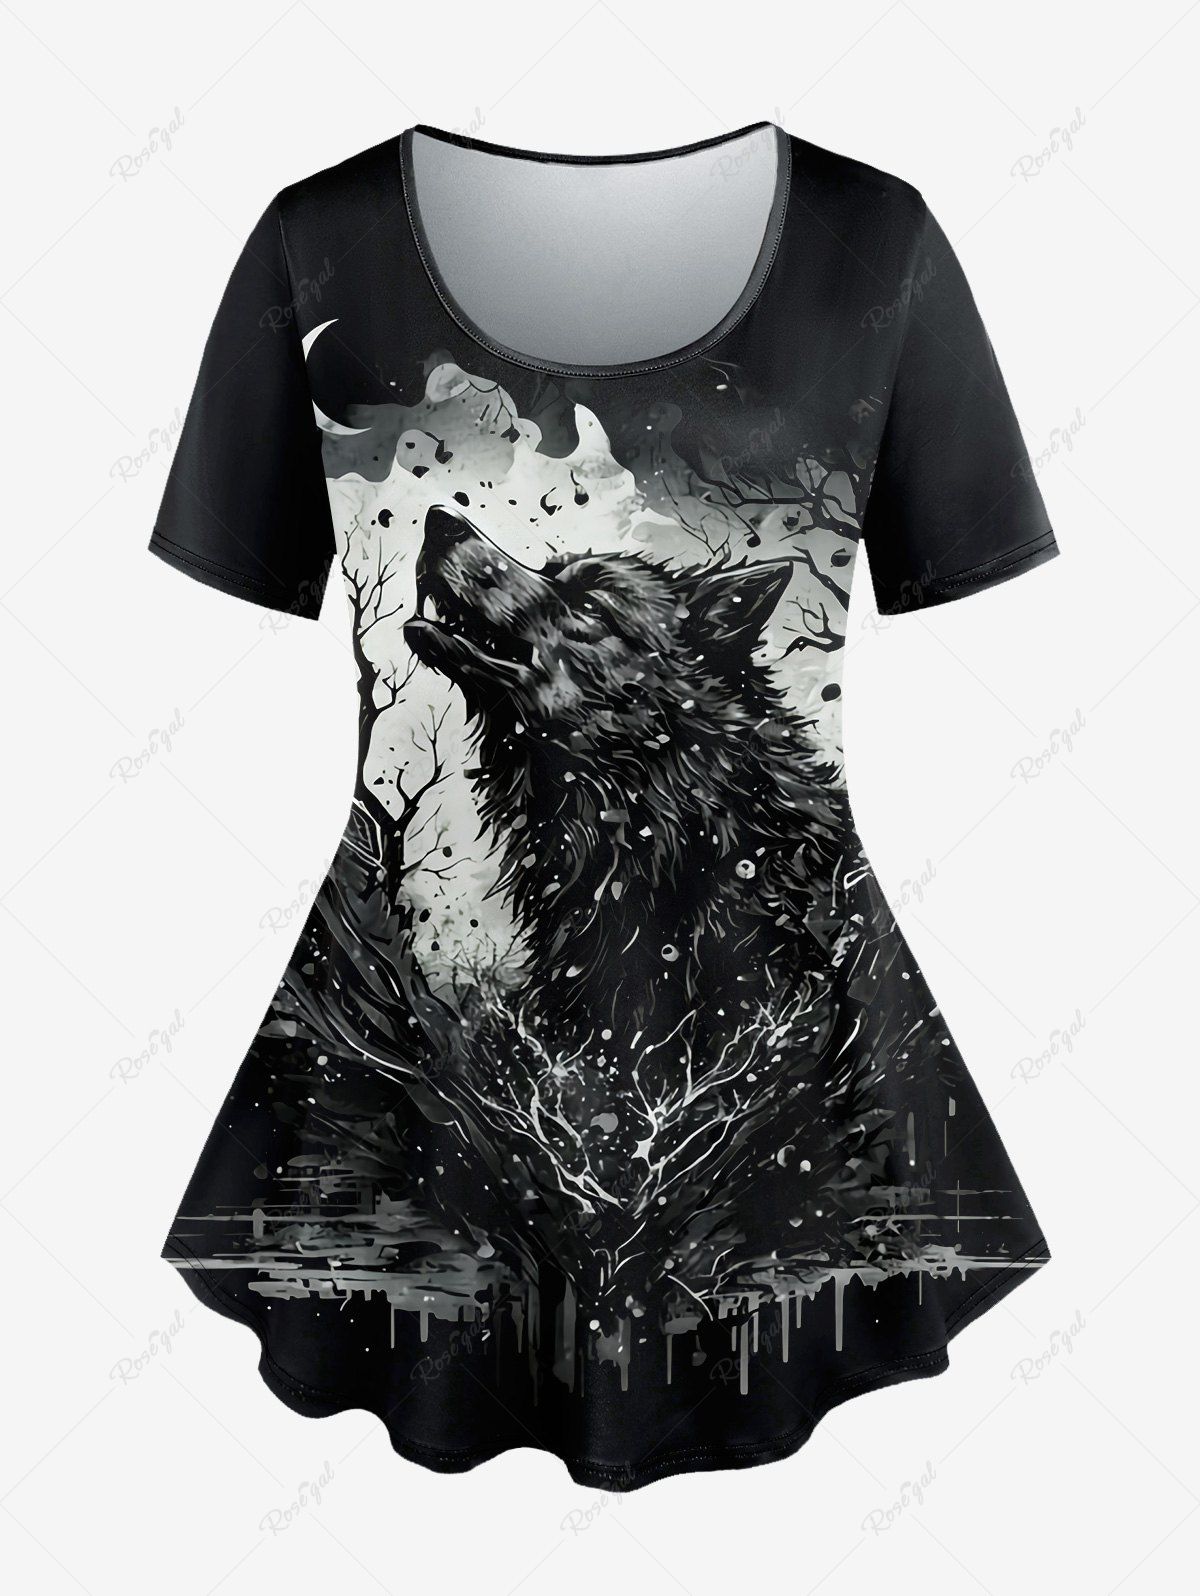 T-shirt Gothique Peinture Eclaboussée Loup et Lune Imprimés à Manches Courtes Noir 2X